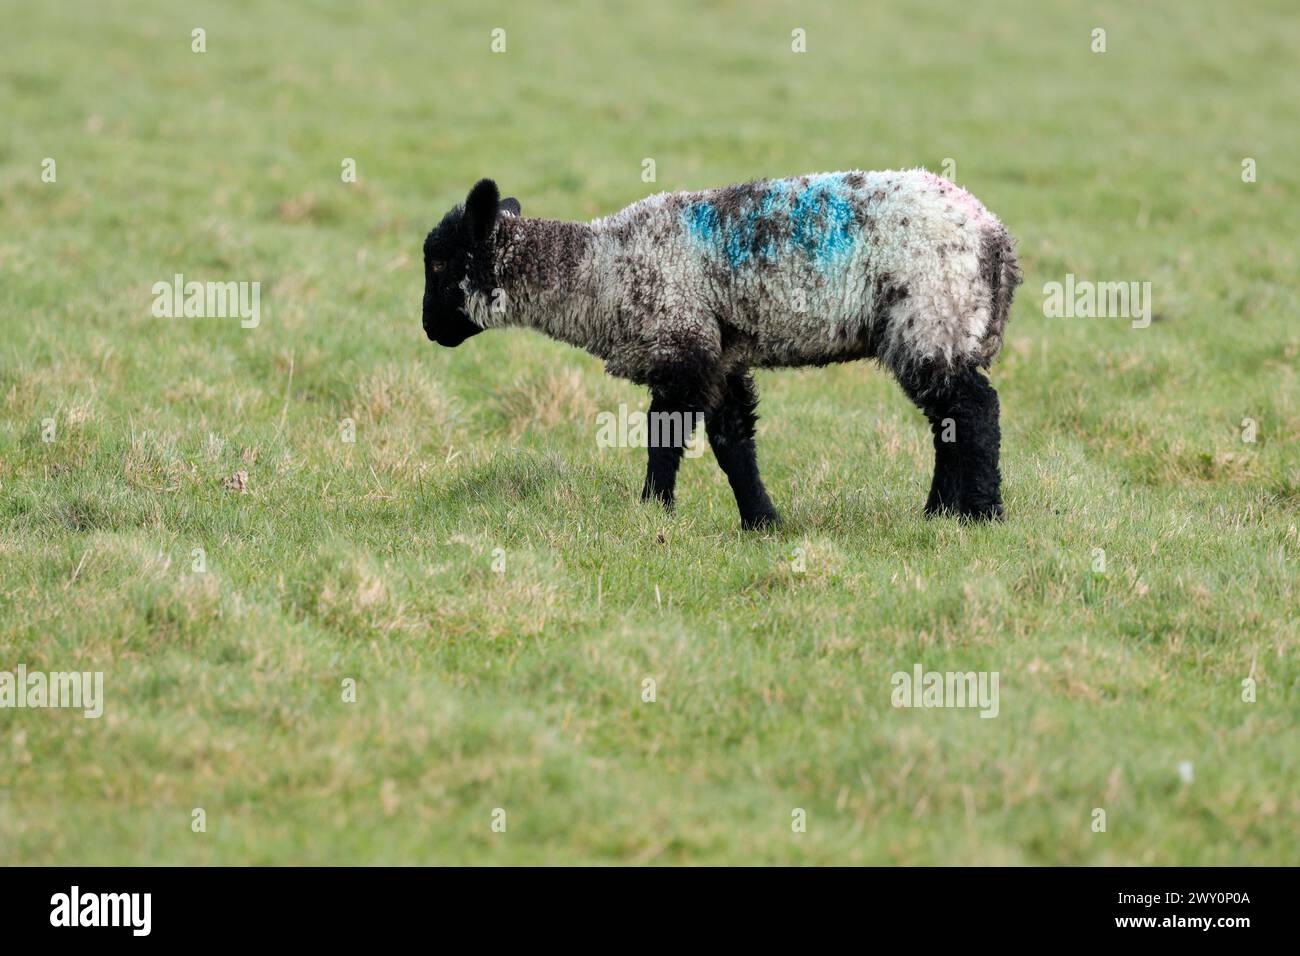 mouton suffolk à visage noir un agneau unique au visage noir et aux pattes corps blanchâtre avec des taches sombres sur une prairie seaford près des sommets des falaises jour froid et venteux Banque D'Images